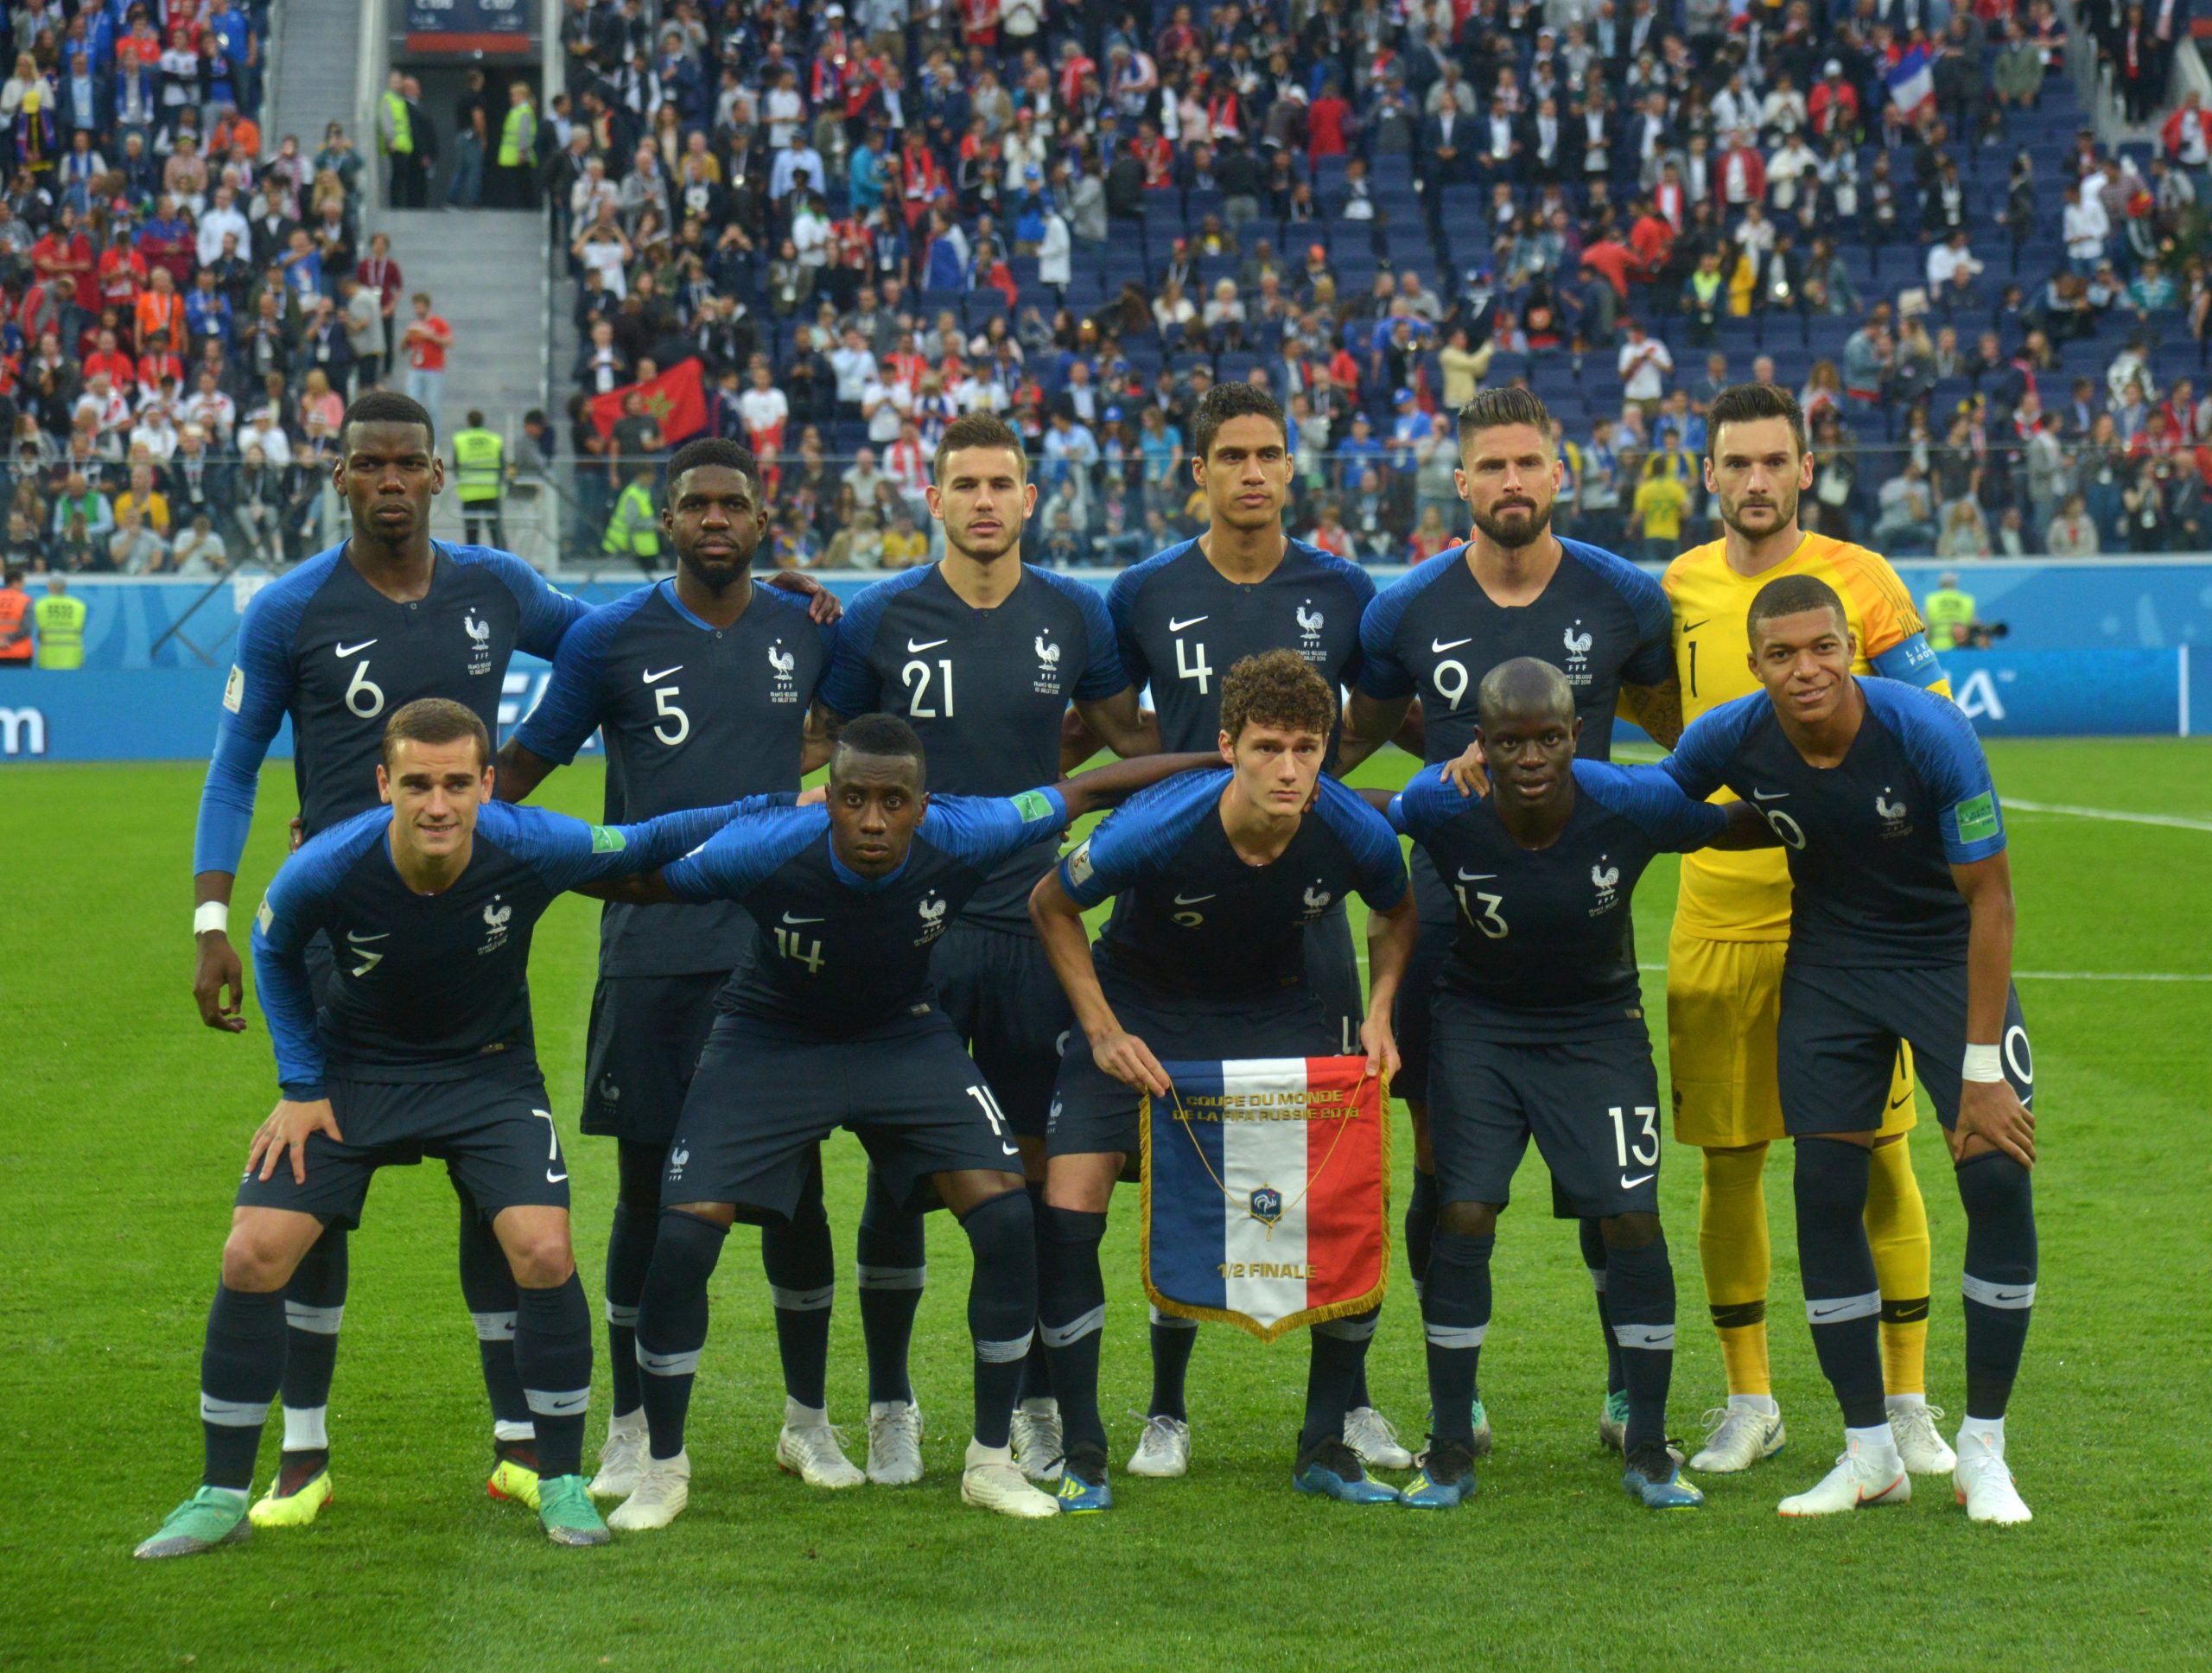 Blessure avant la Coupe du monde.  La star de la France ne s’envolera pas pour le Qatar